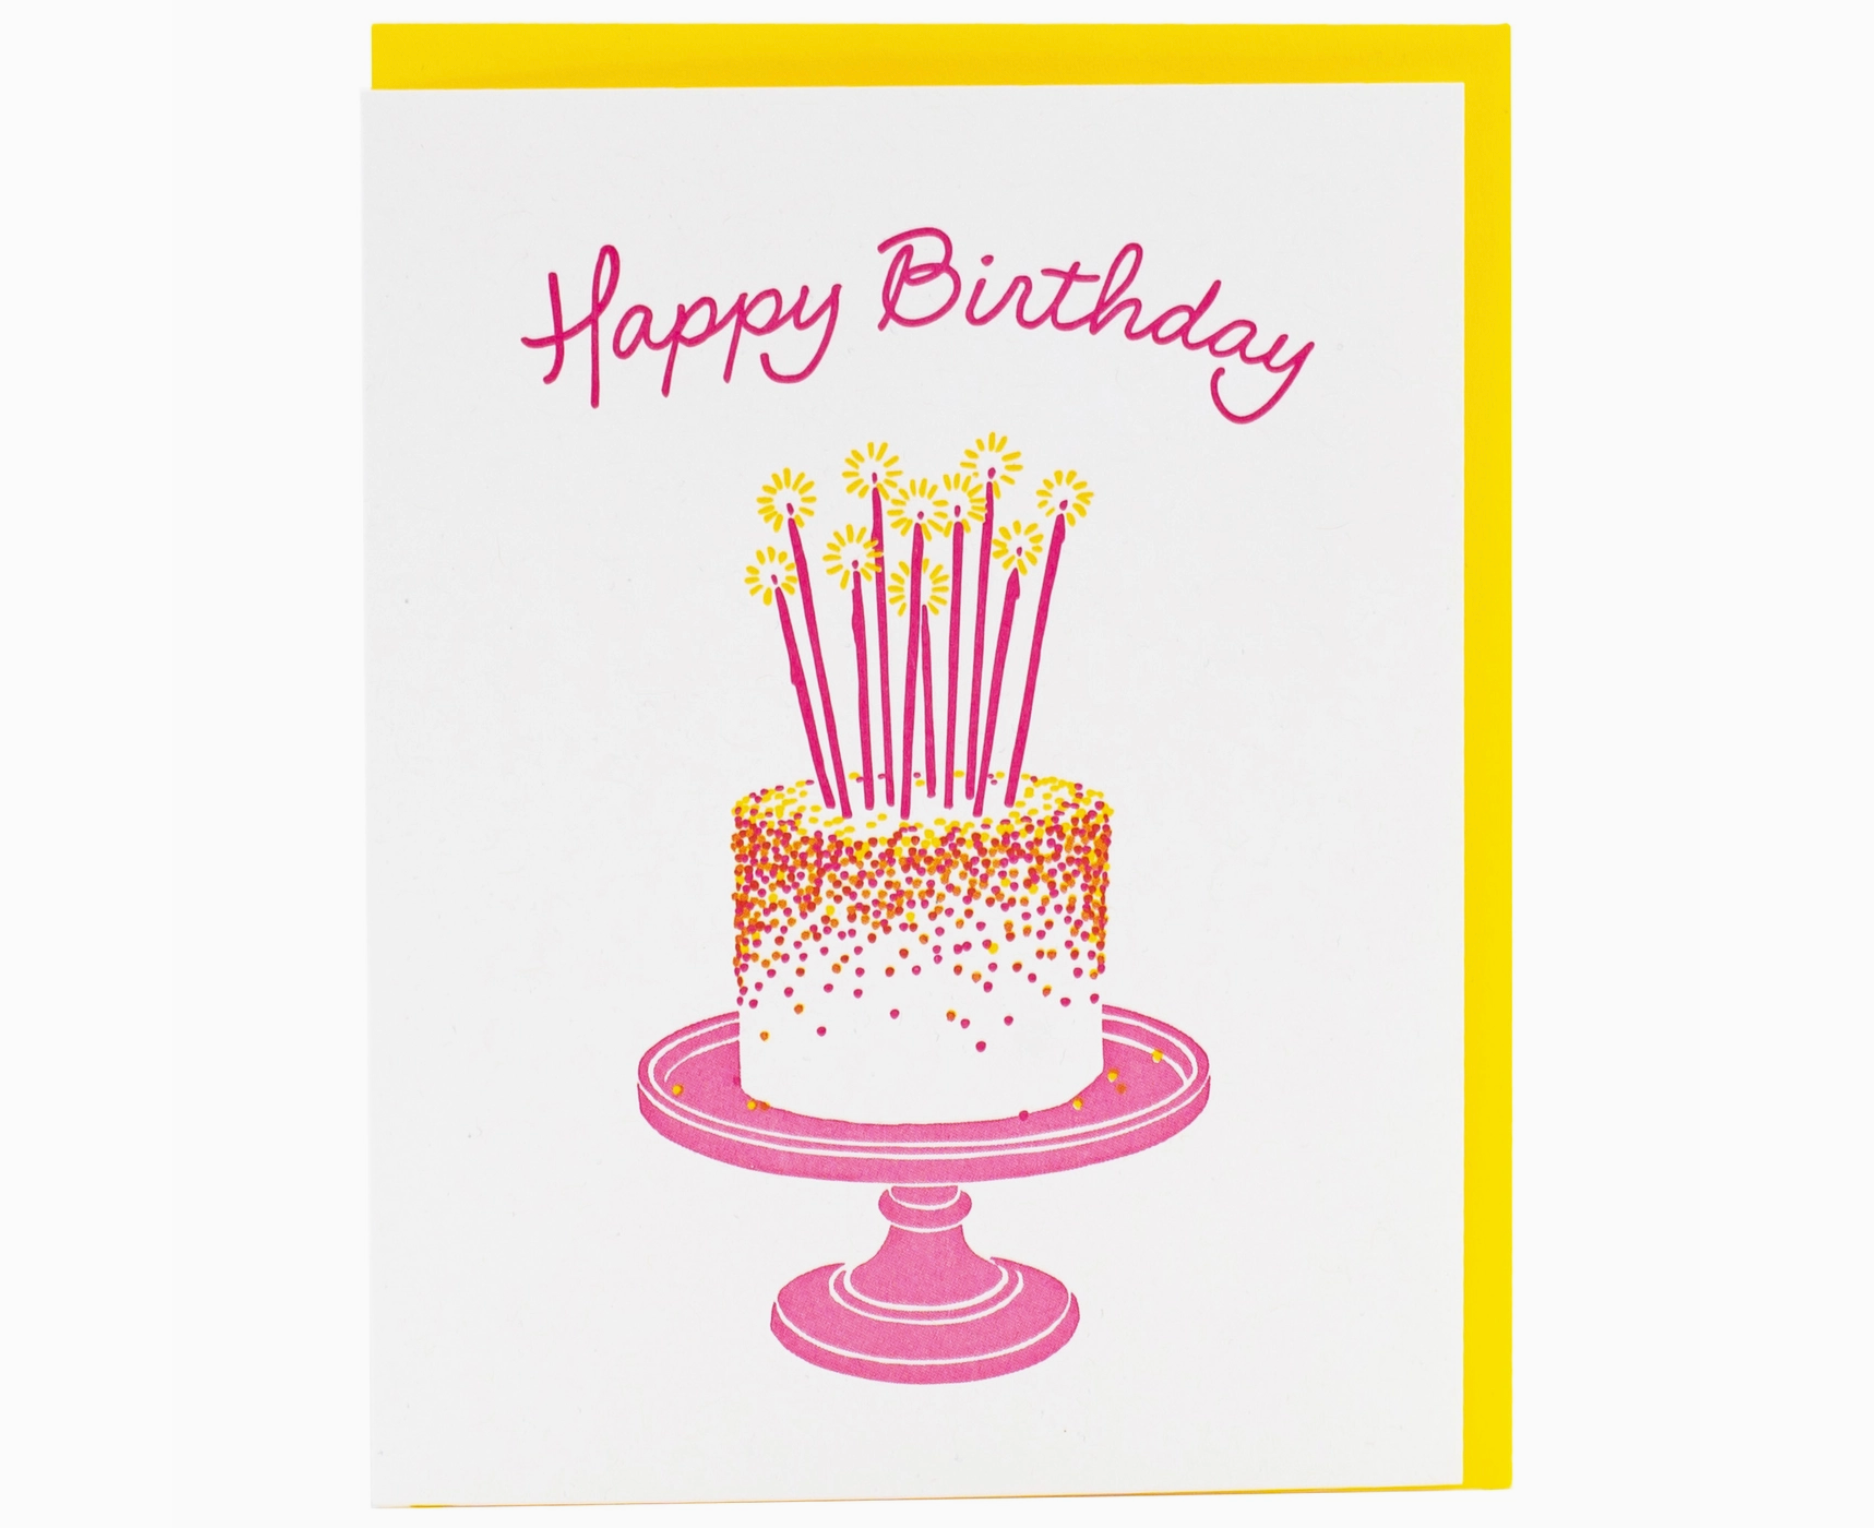 $6.99 HAPPY BIRTHDAY PINK SPARKLERS BIRTHDAY CAKE BIRTHDAY CARD